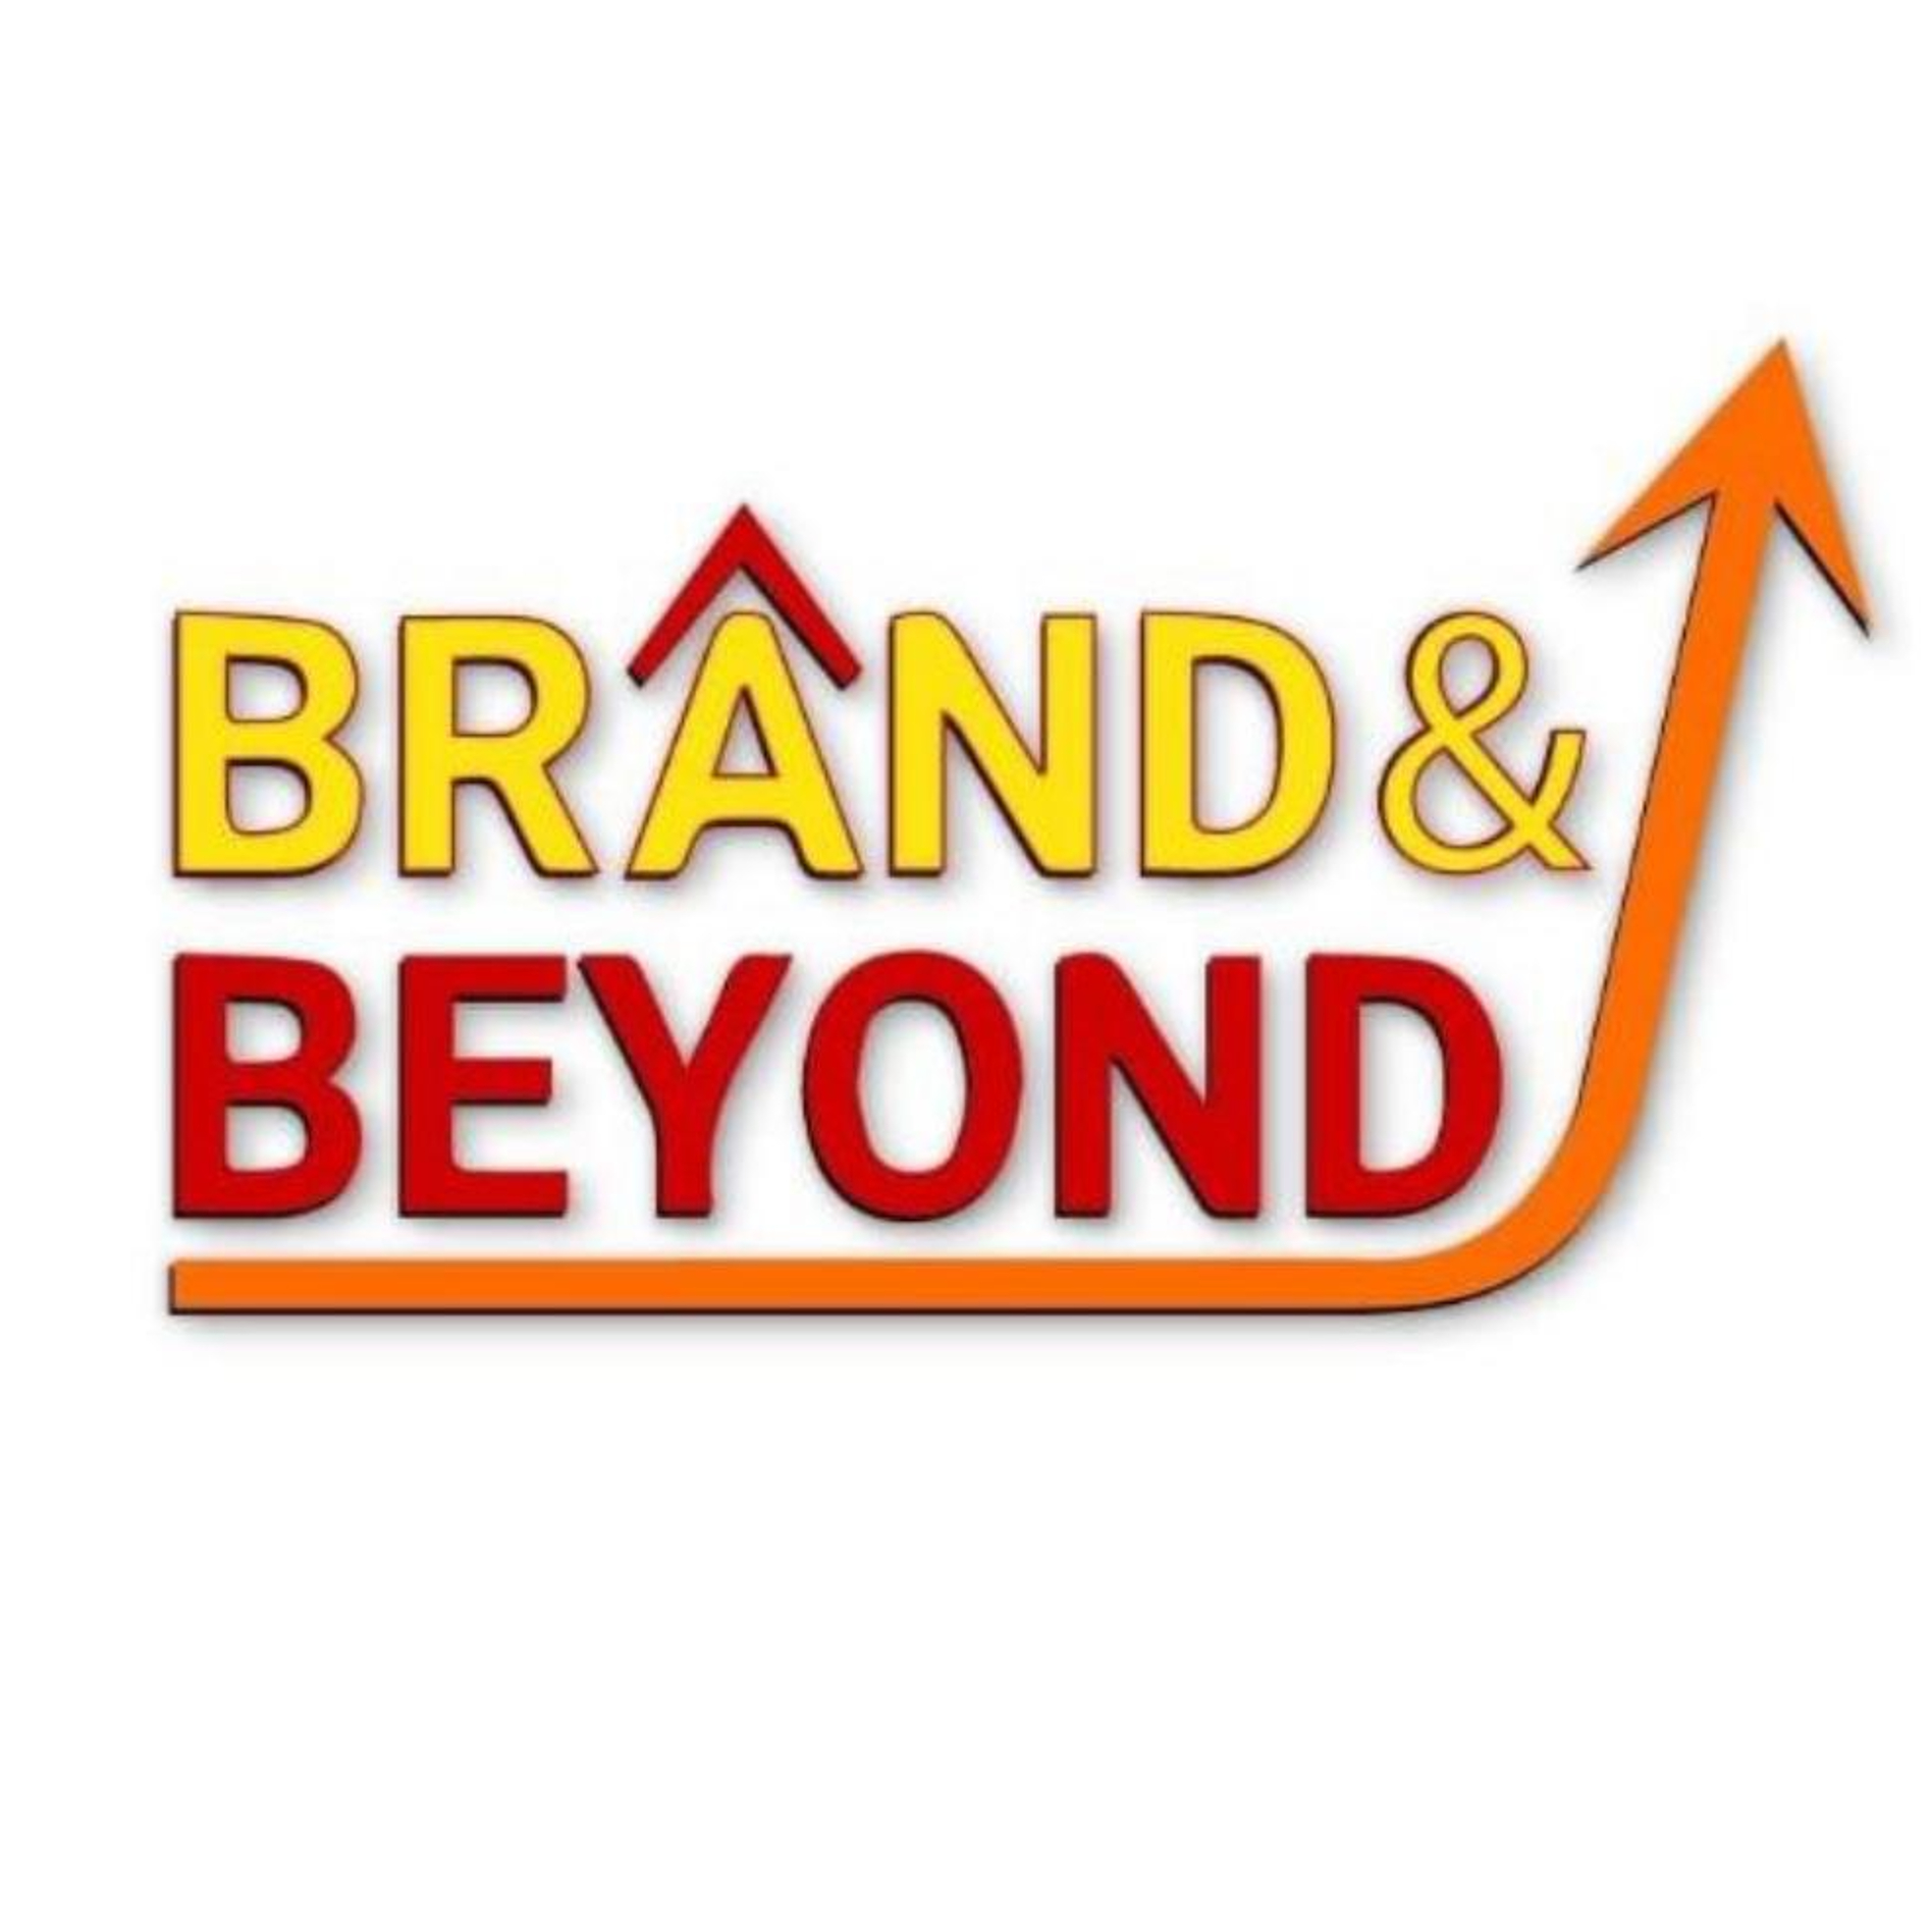 Brand and Beyond